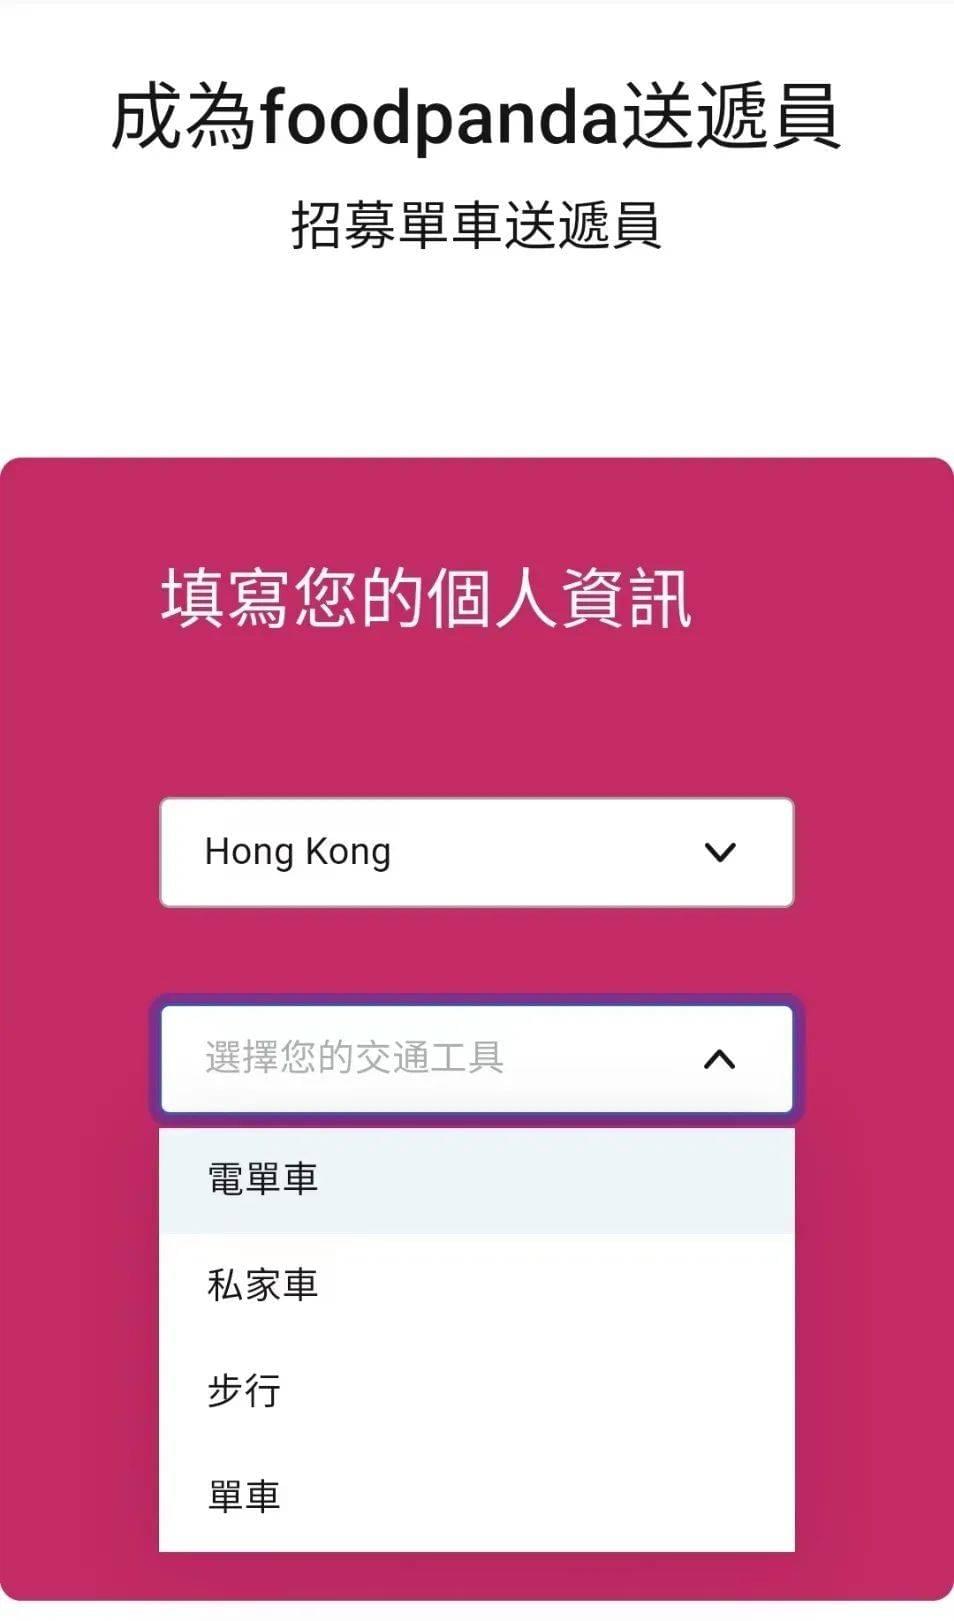 香港外卖员有四种主要的交通方式，图源Foodpanda注册页面